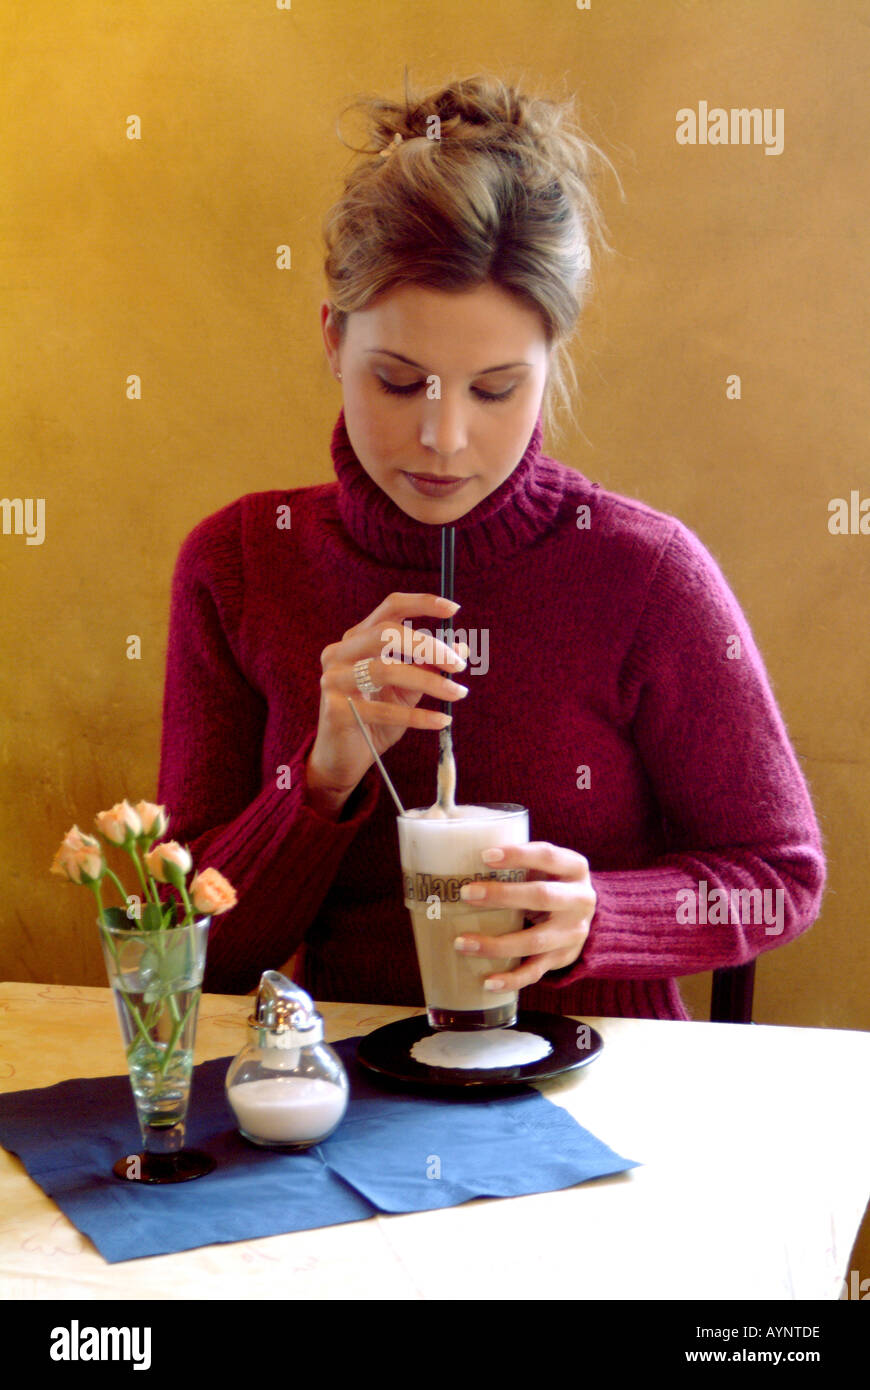 Junge dunkelhaarige Frau trinkt einen Eiskaffee Stock Photo